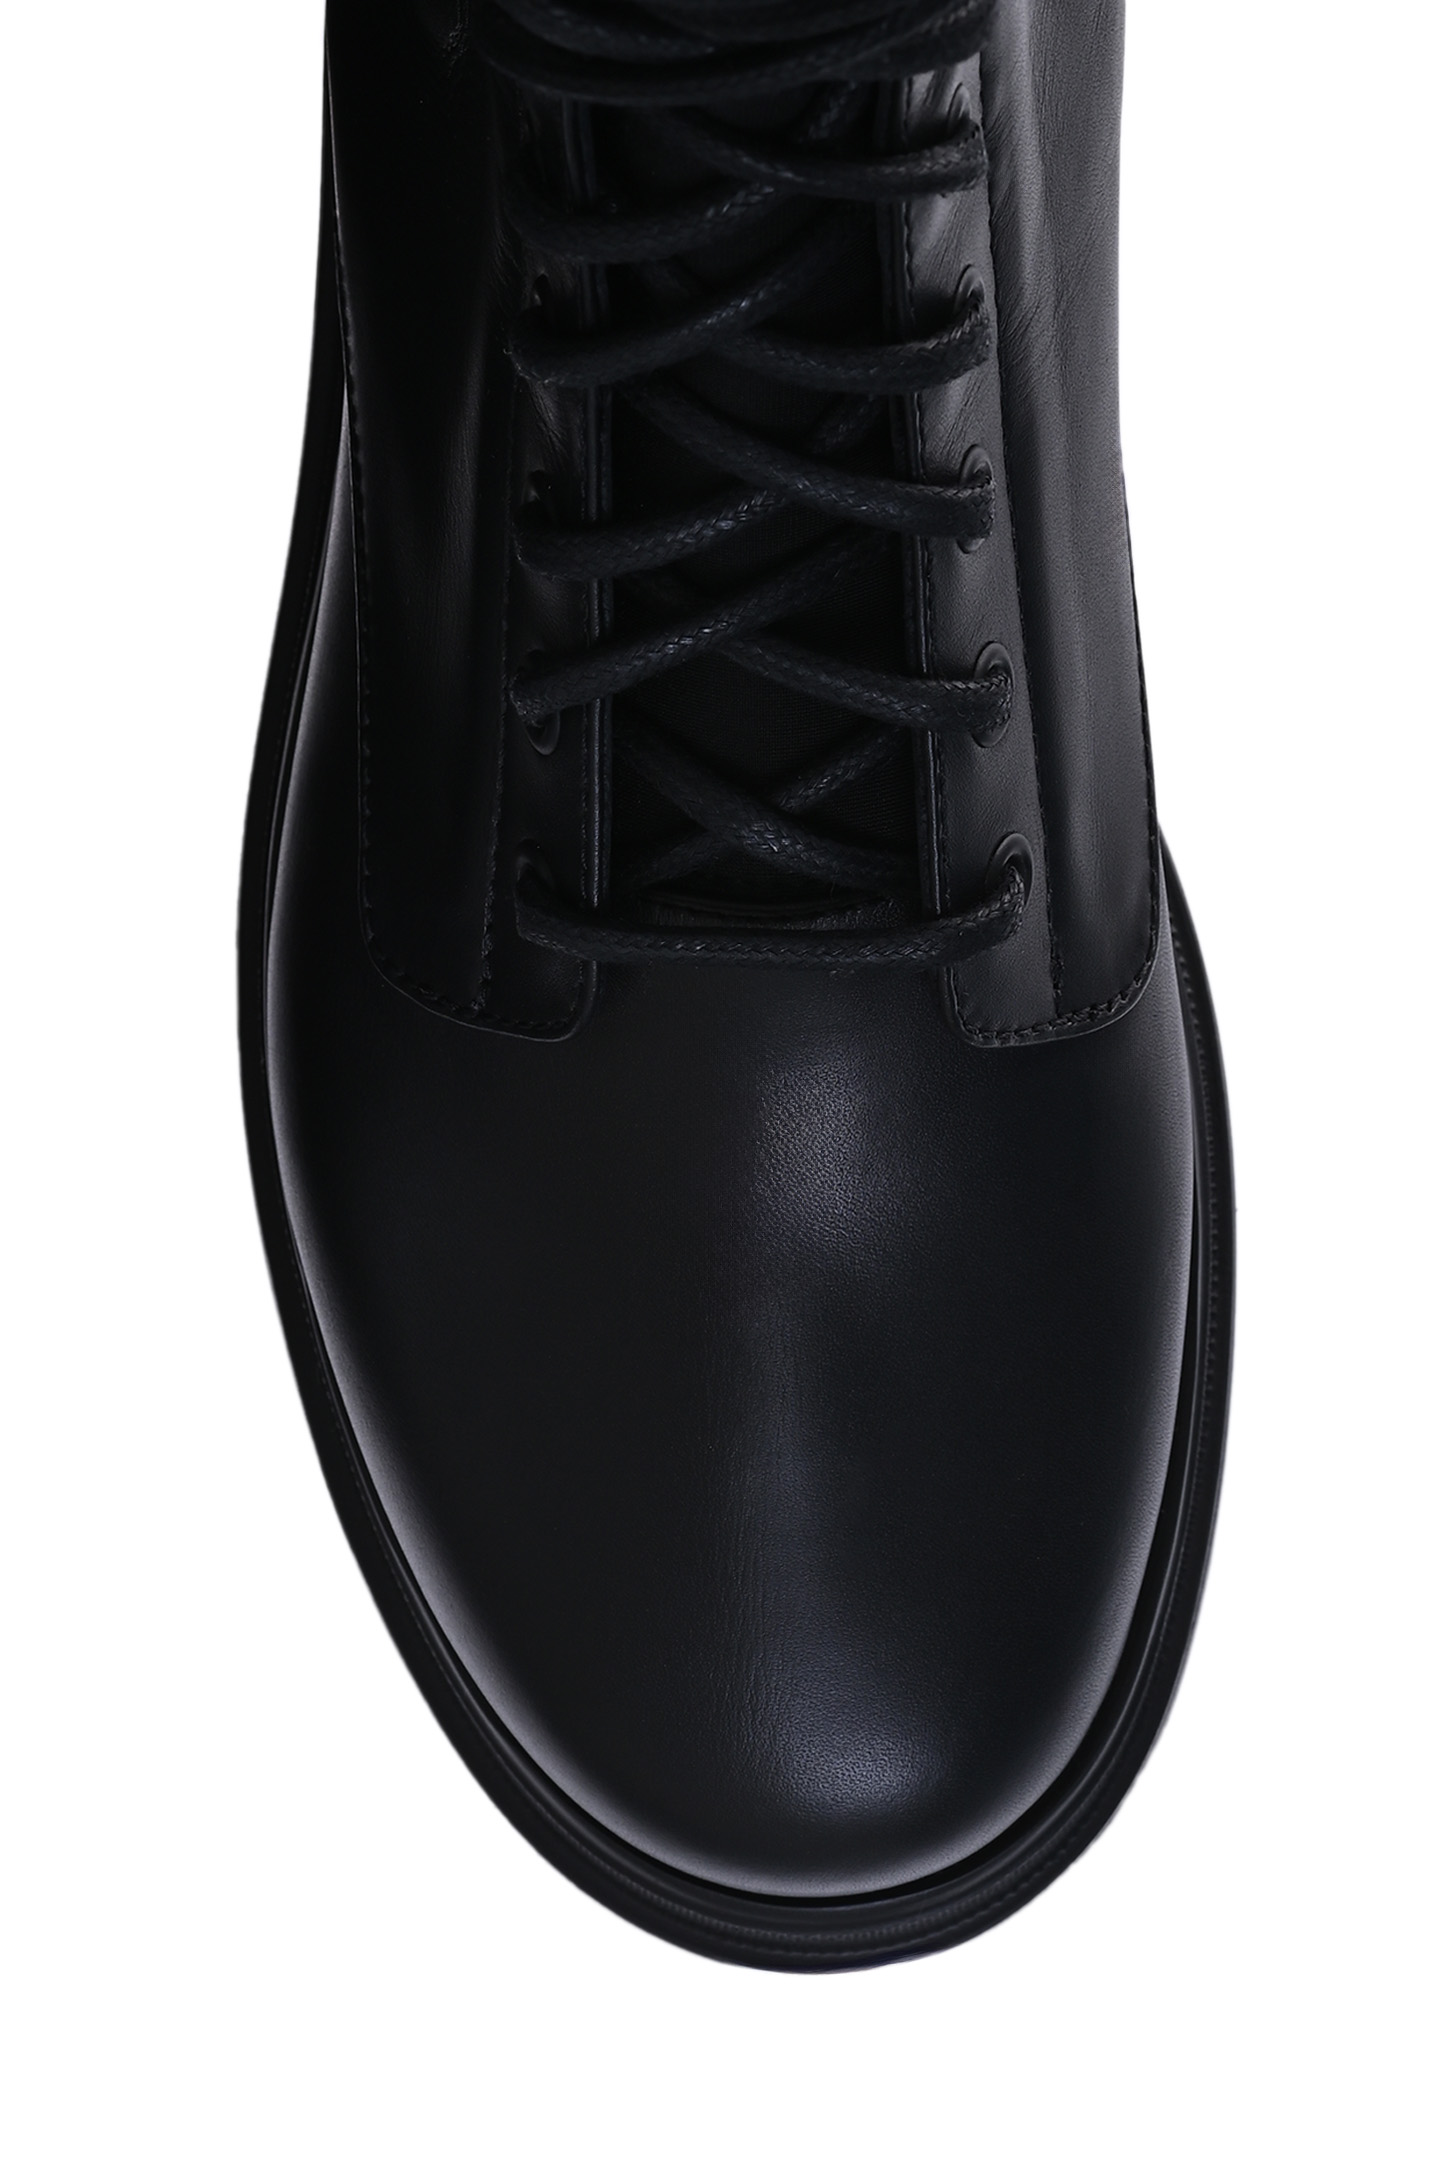 Ботинки LE SILLA 6482R020M1PPCHI001, цвет: Черный, Женский